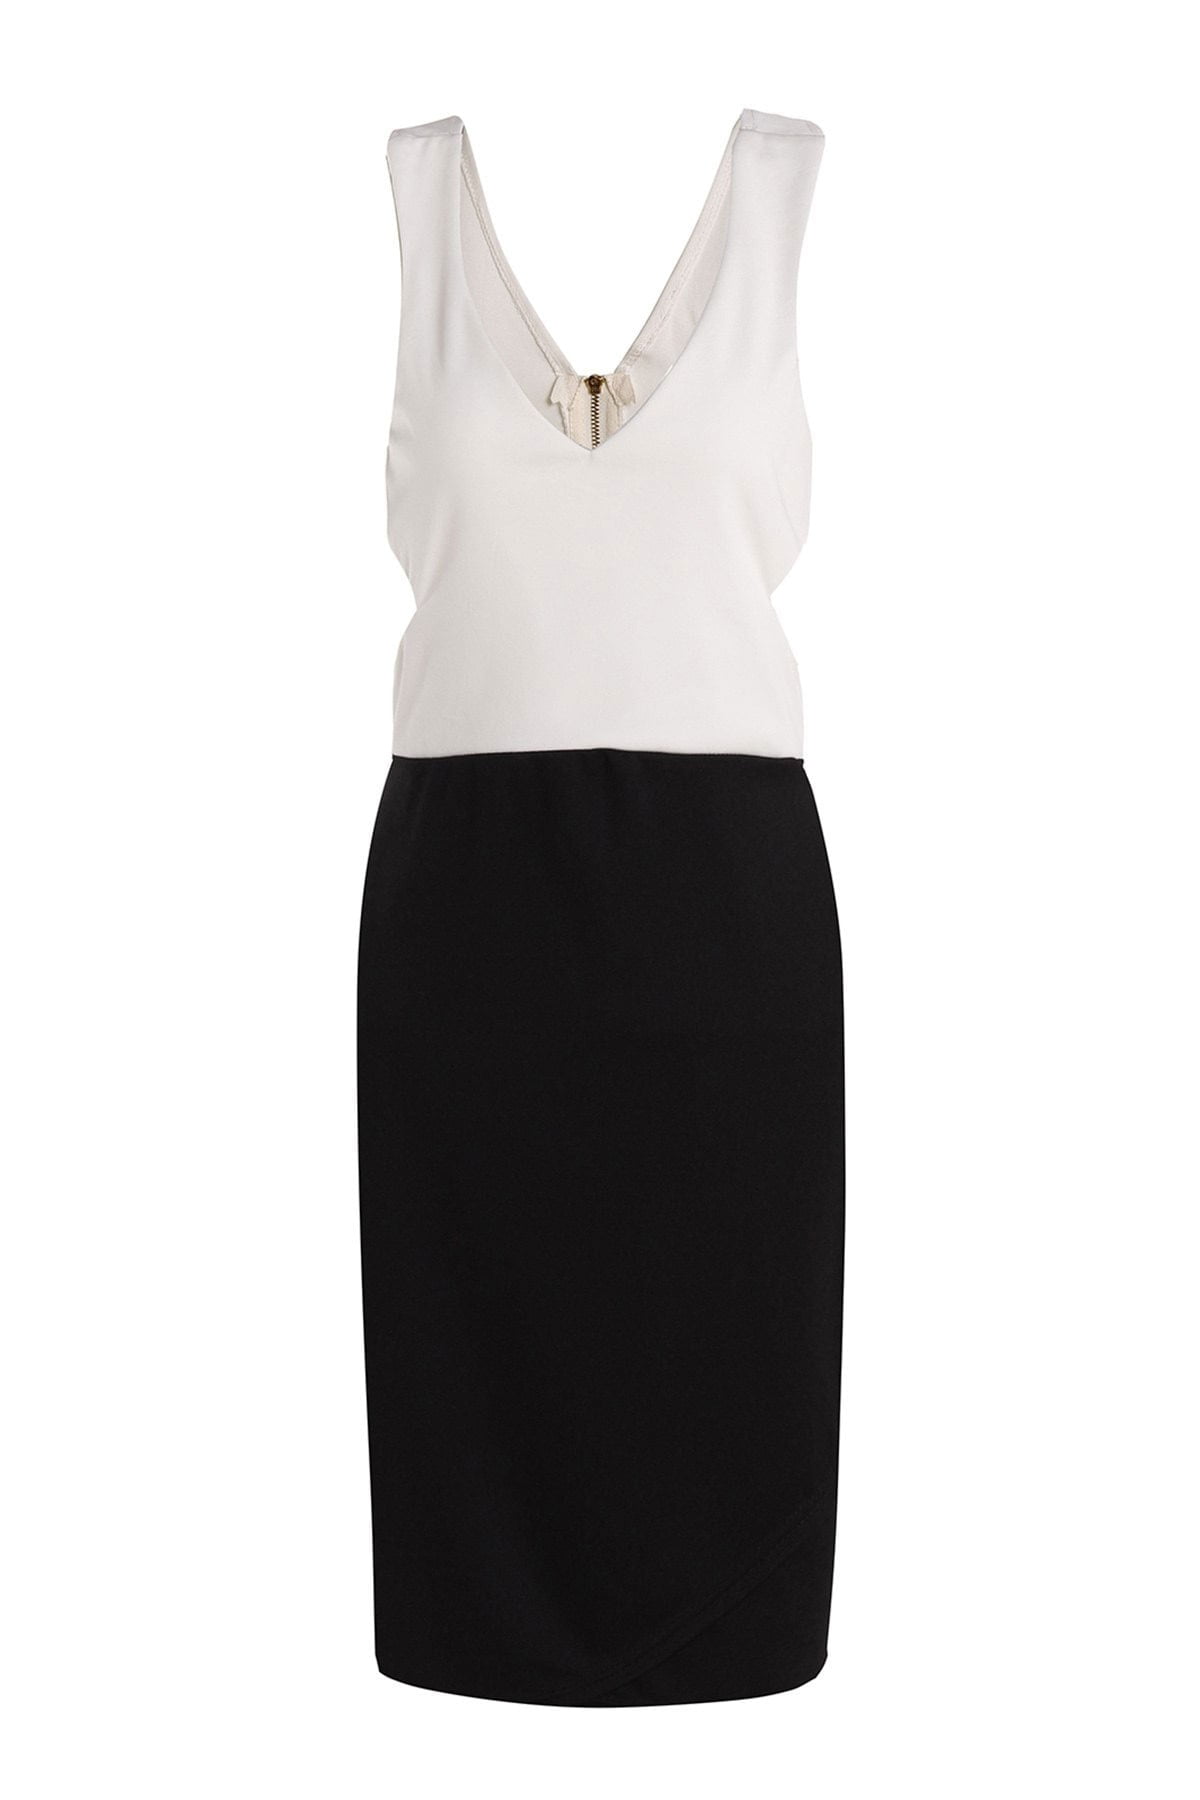 M0157 blackwhite1 Office Evening Dresses maureens.com boutique